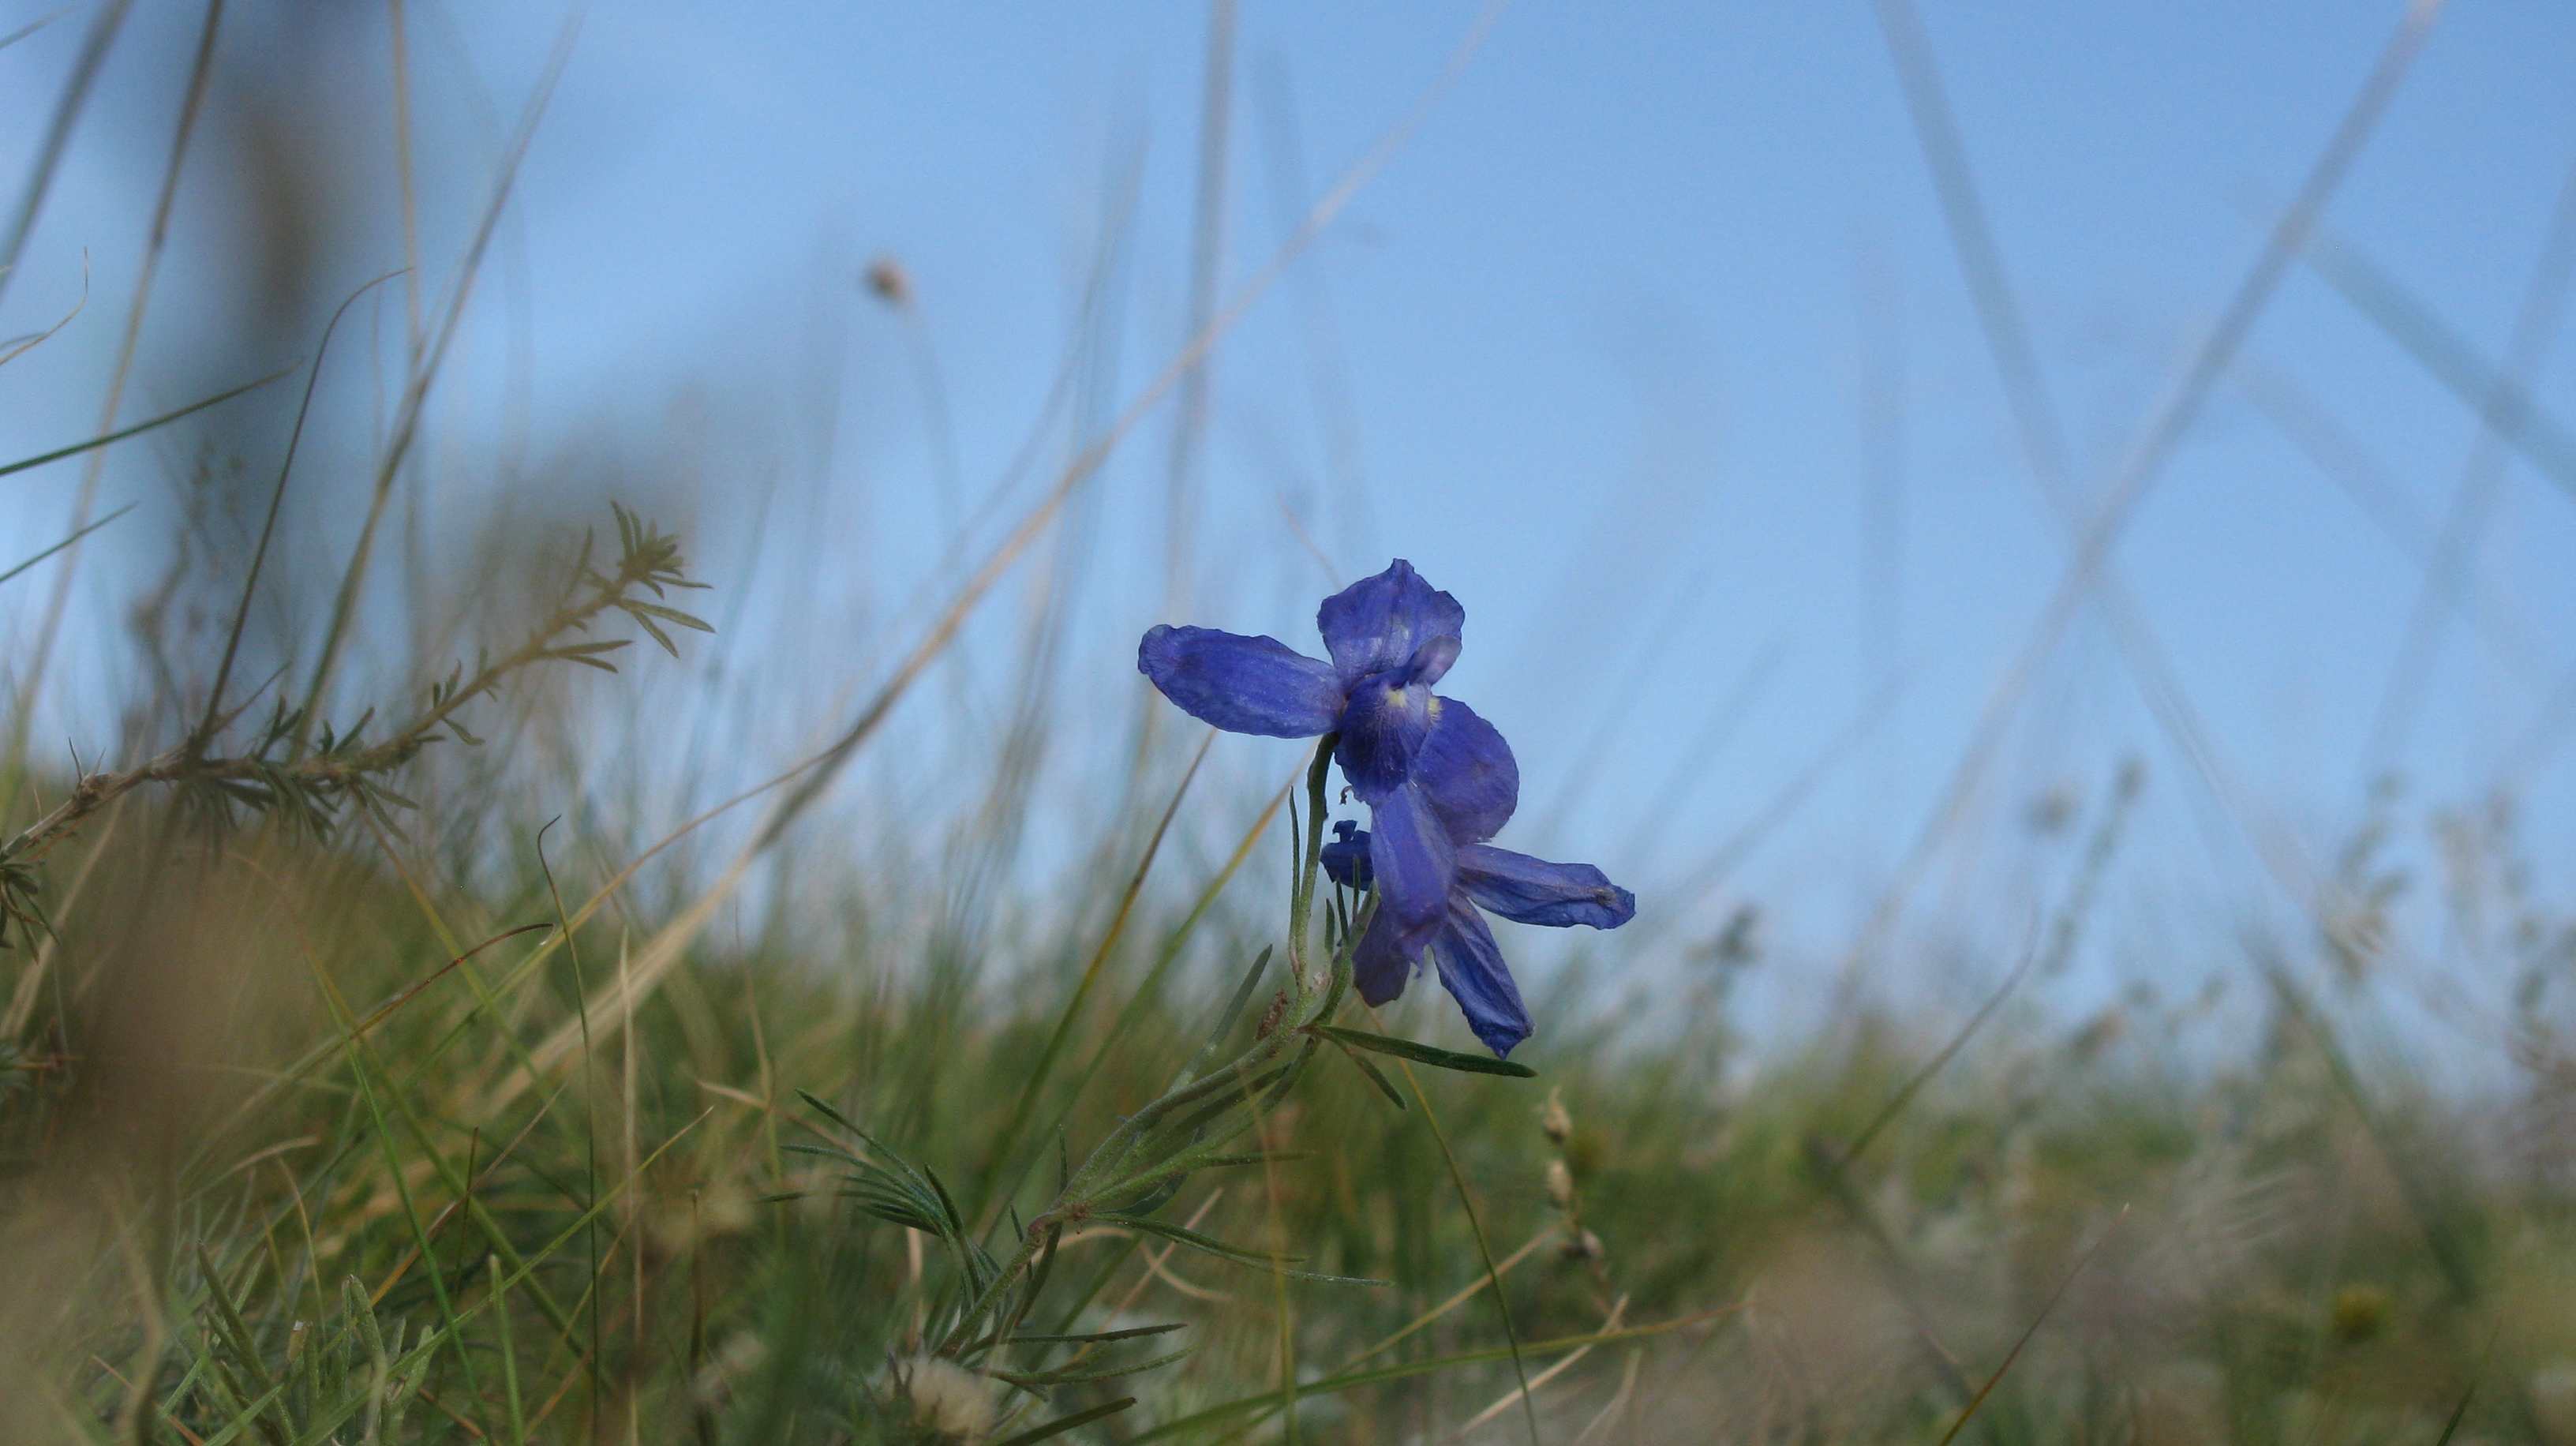 A Mongolian flower.